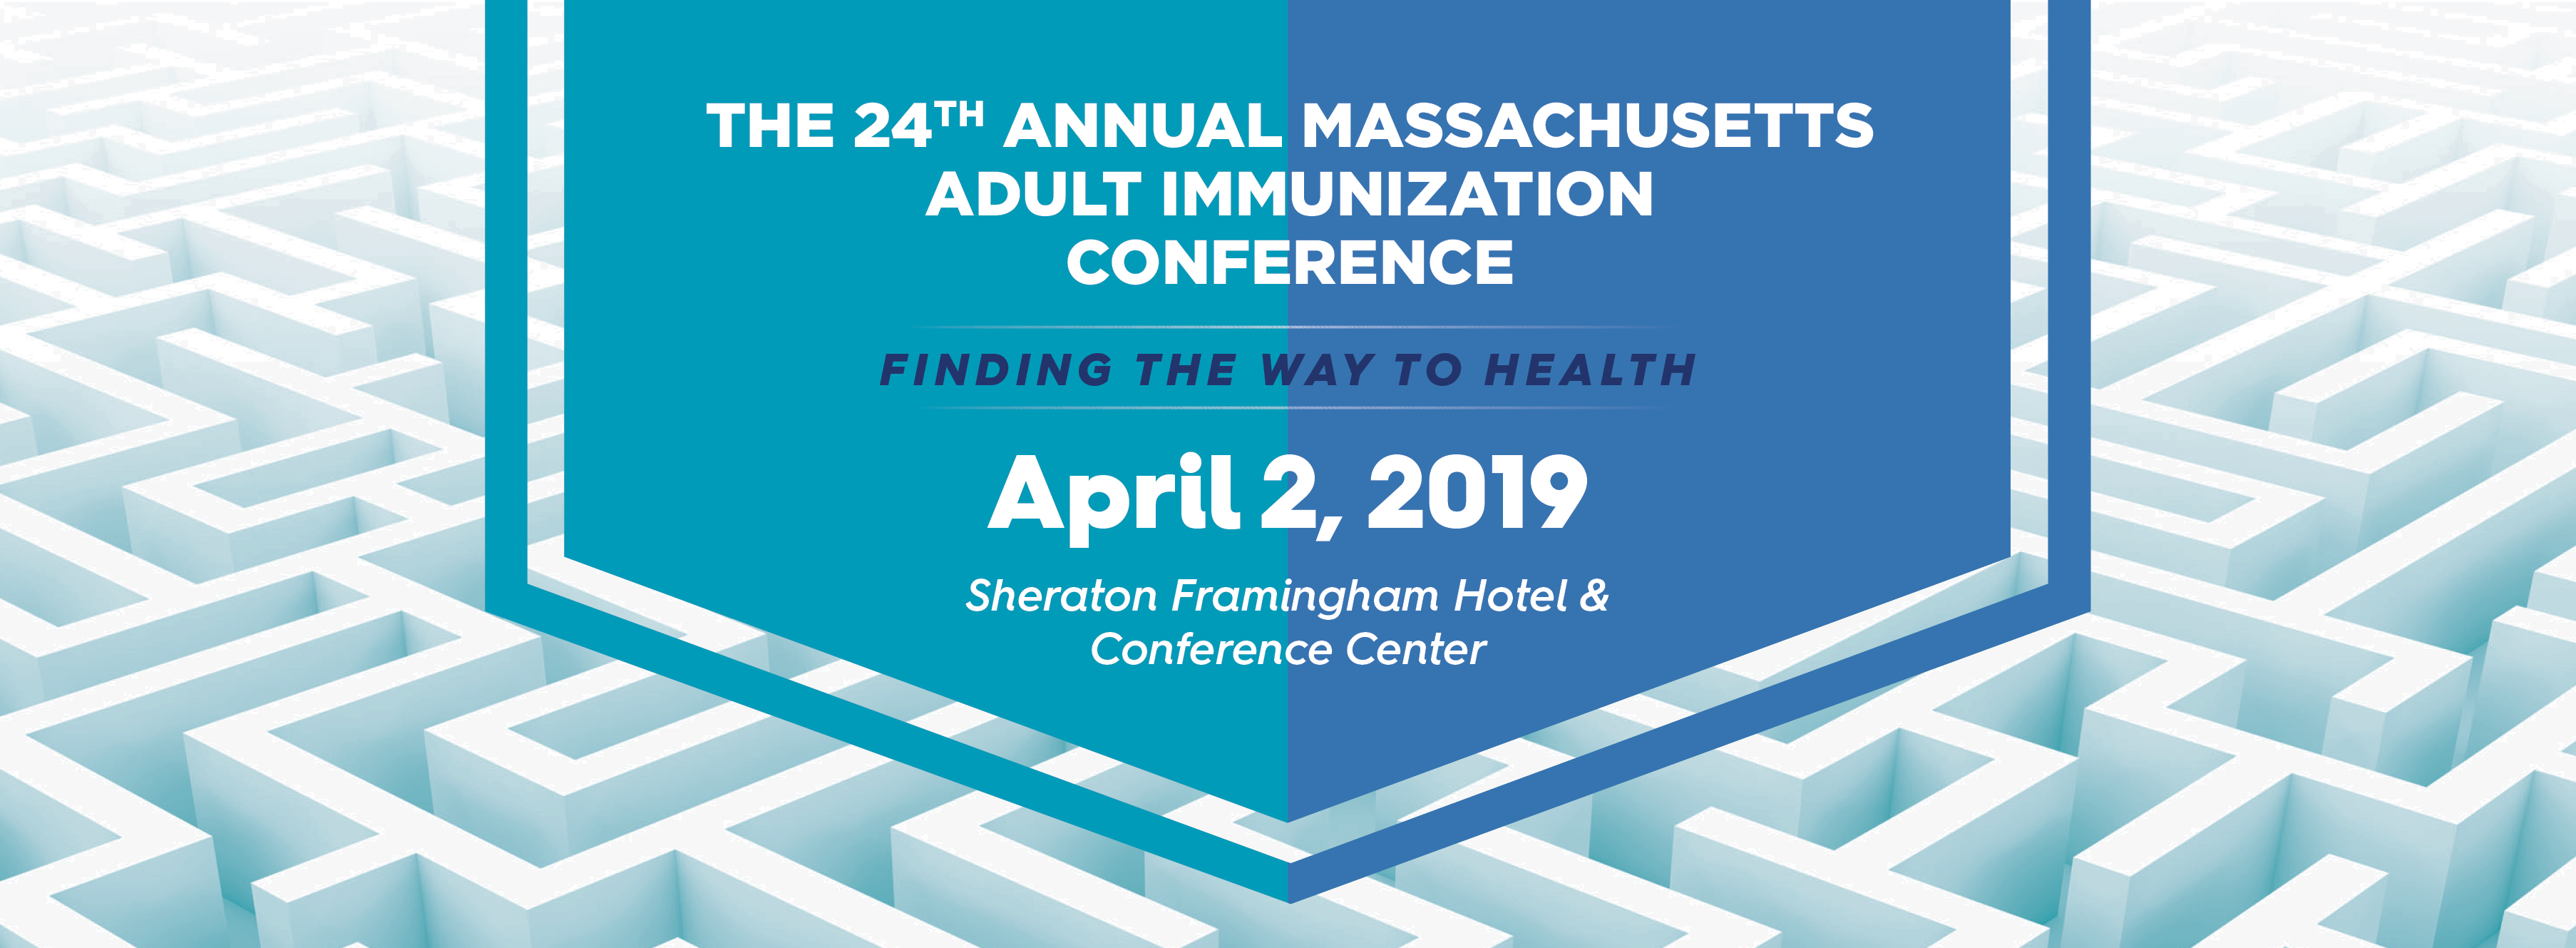 MA Adult Immunization Conference 2019